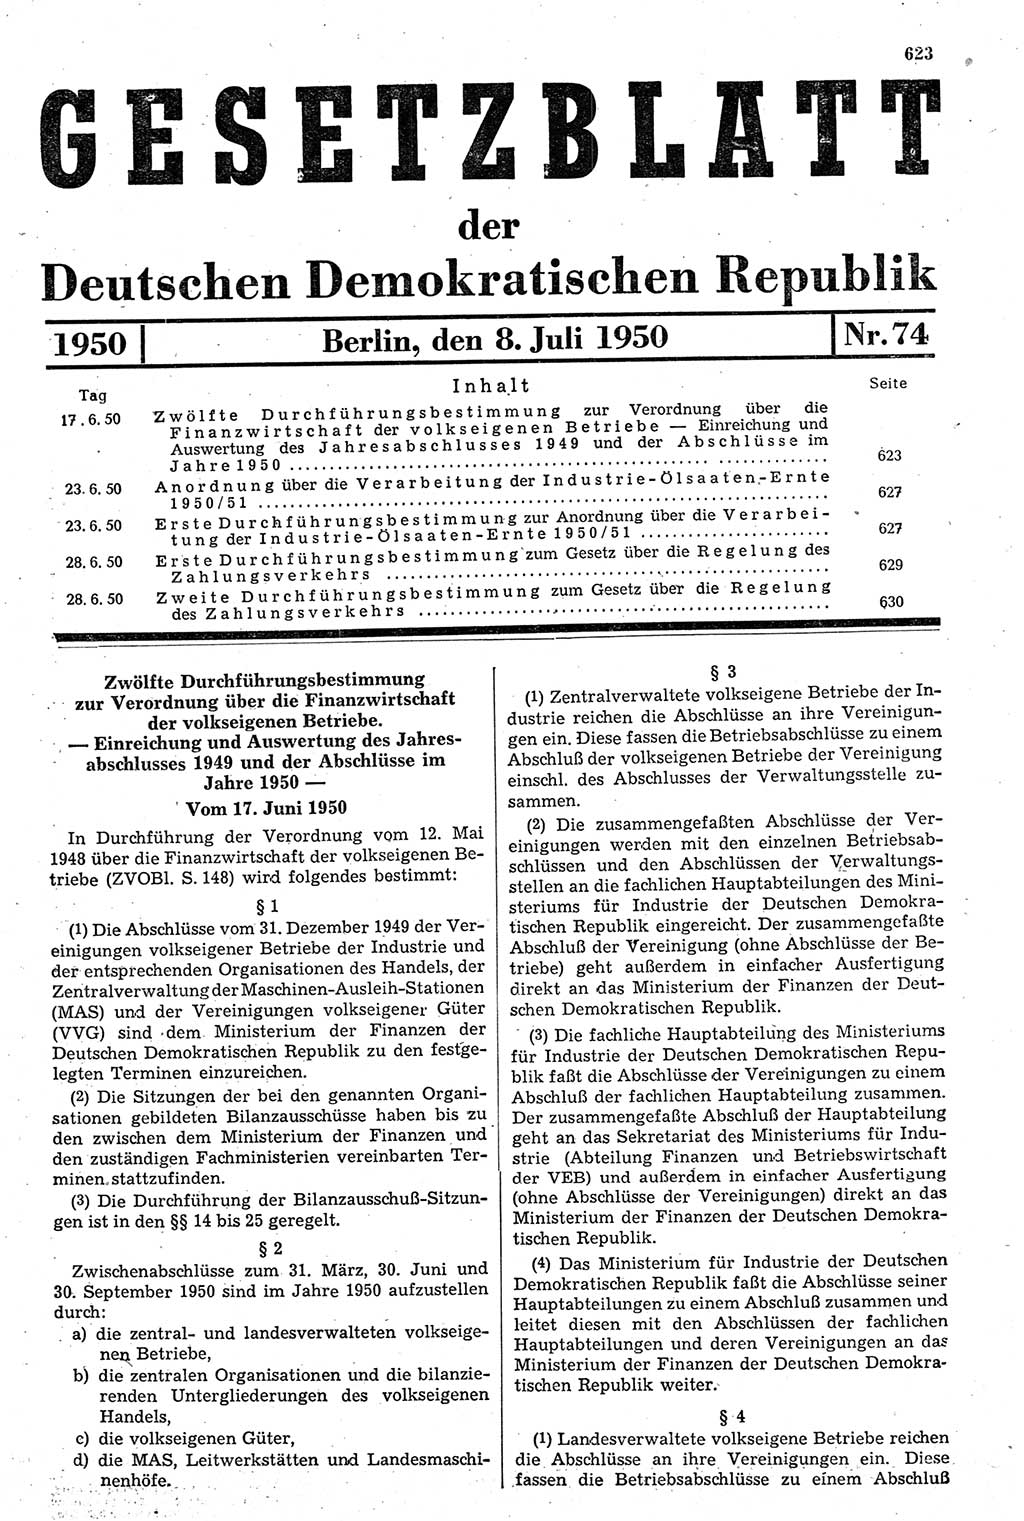 Gesetzblatt (GBl.) der Deutschen Demokratischen Republik (DDR) 1950, Seite 623 (GBl. DDR 1950, S. 623)